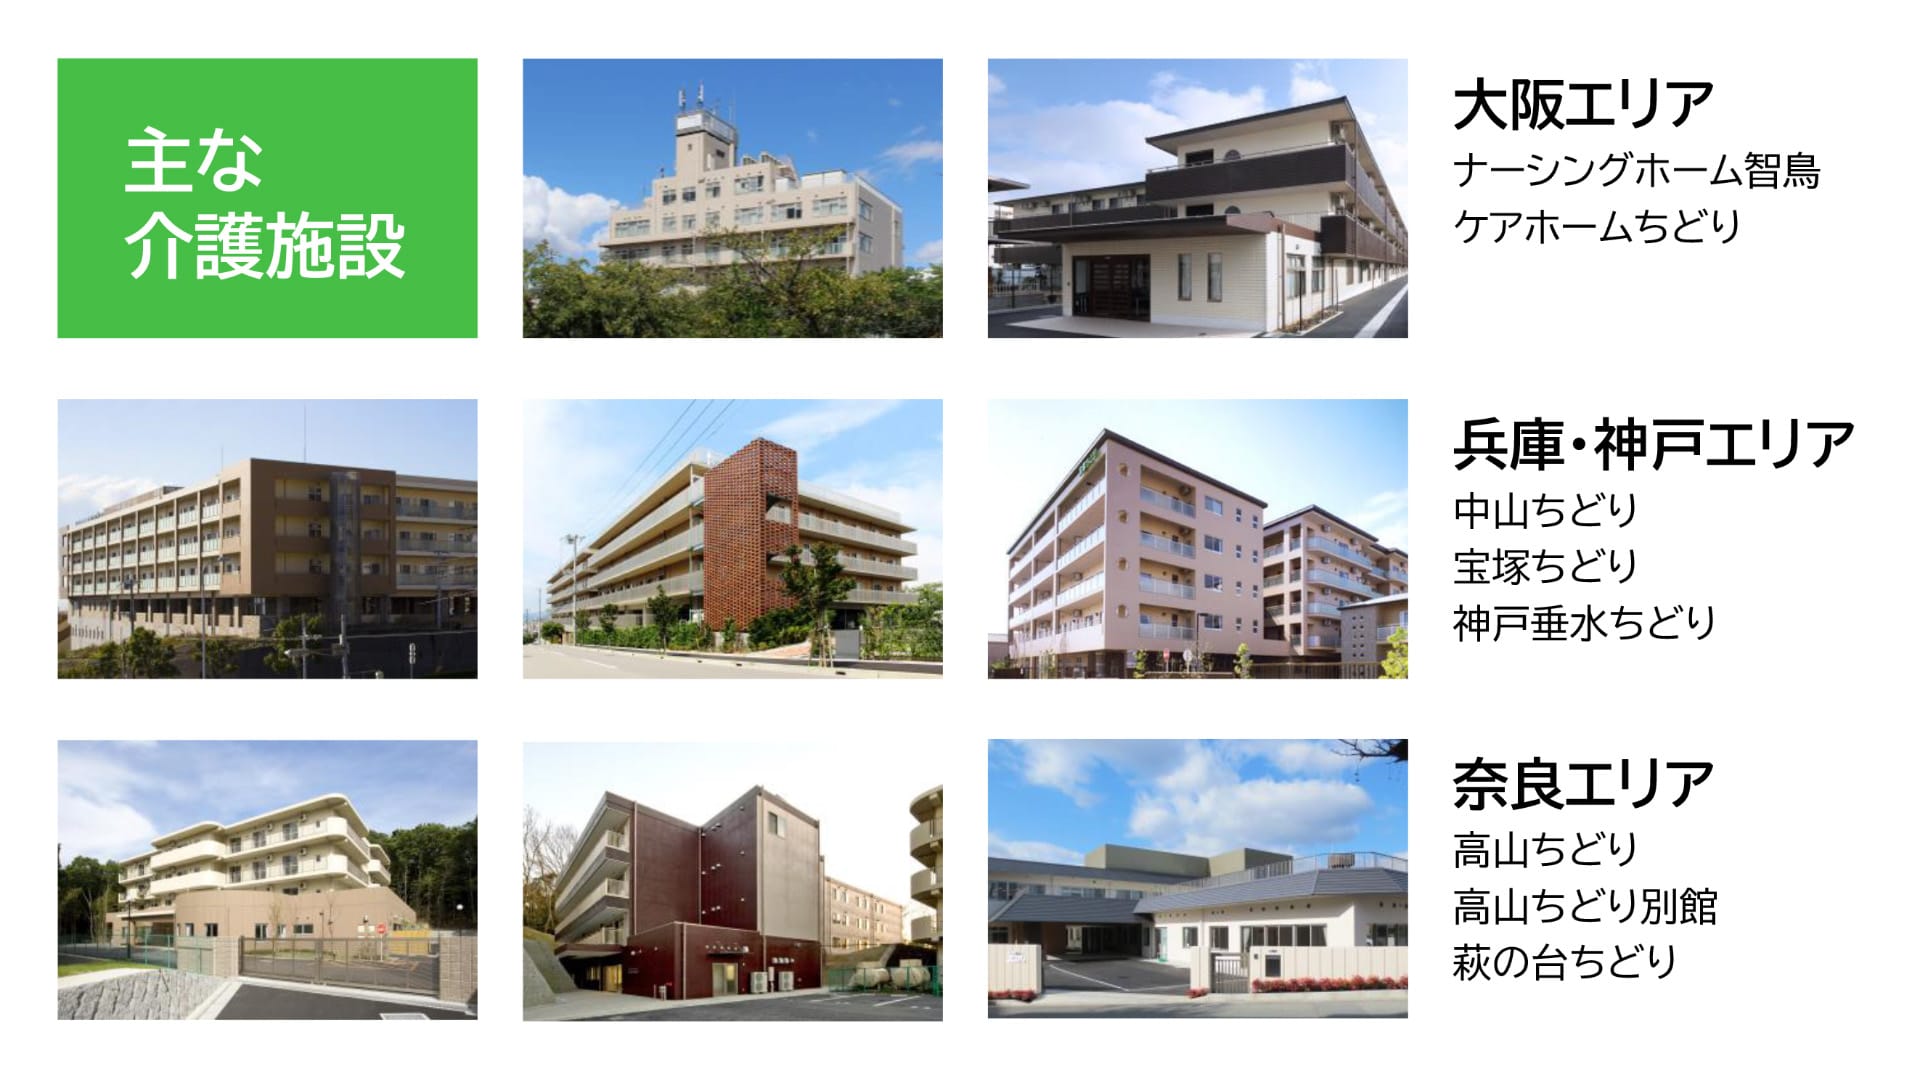 大阪エリアはナーシングホーム智鳥、兵庫・神戸エリアは中山ちどり、奈良エリアは高山ちどりが介護施設の主な施設です。